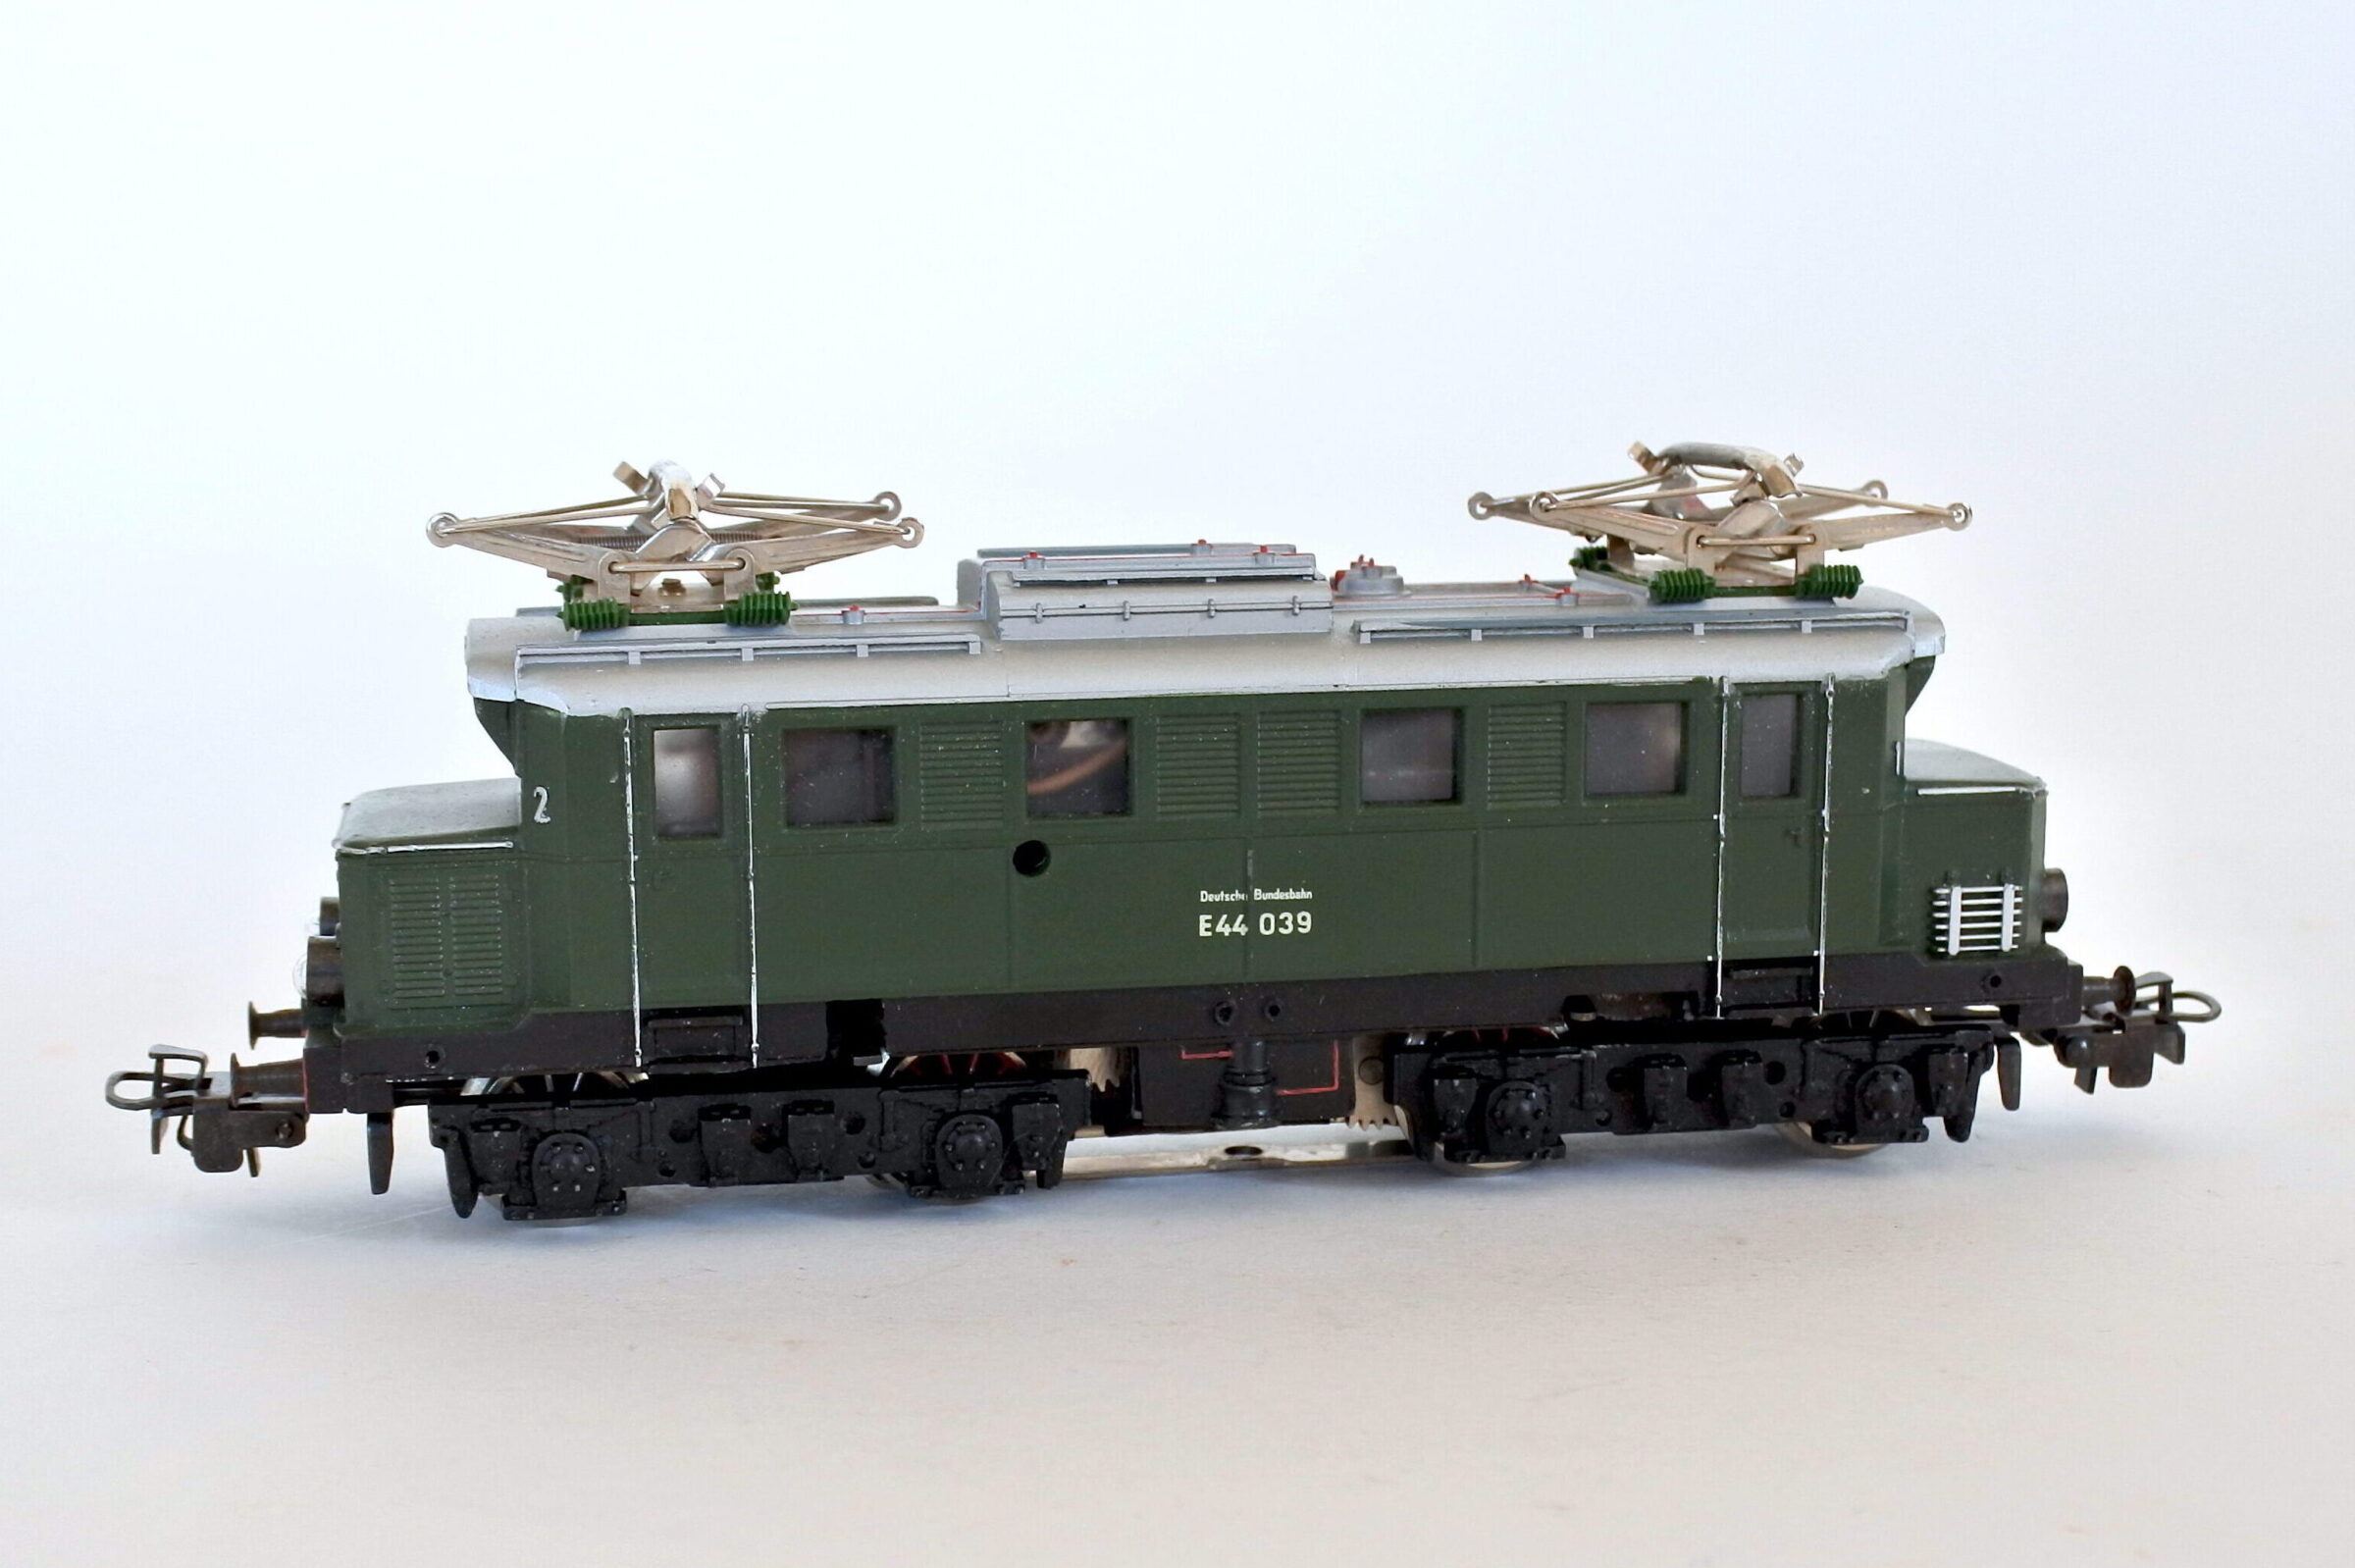 Locomotiva elettrica Marklin 3011 E44 039 H0 della DB Tedesca - 2